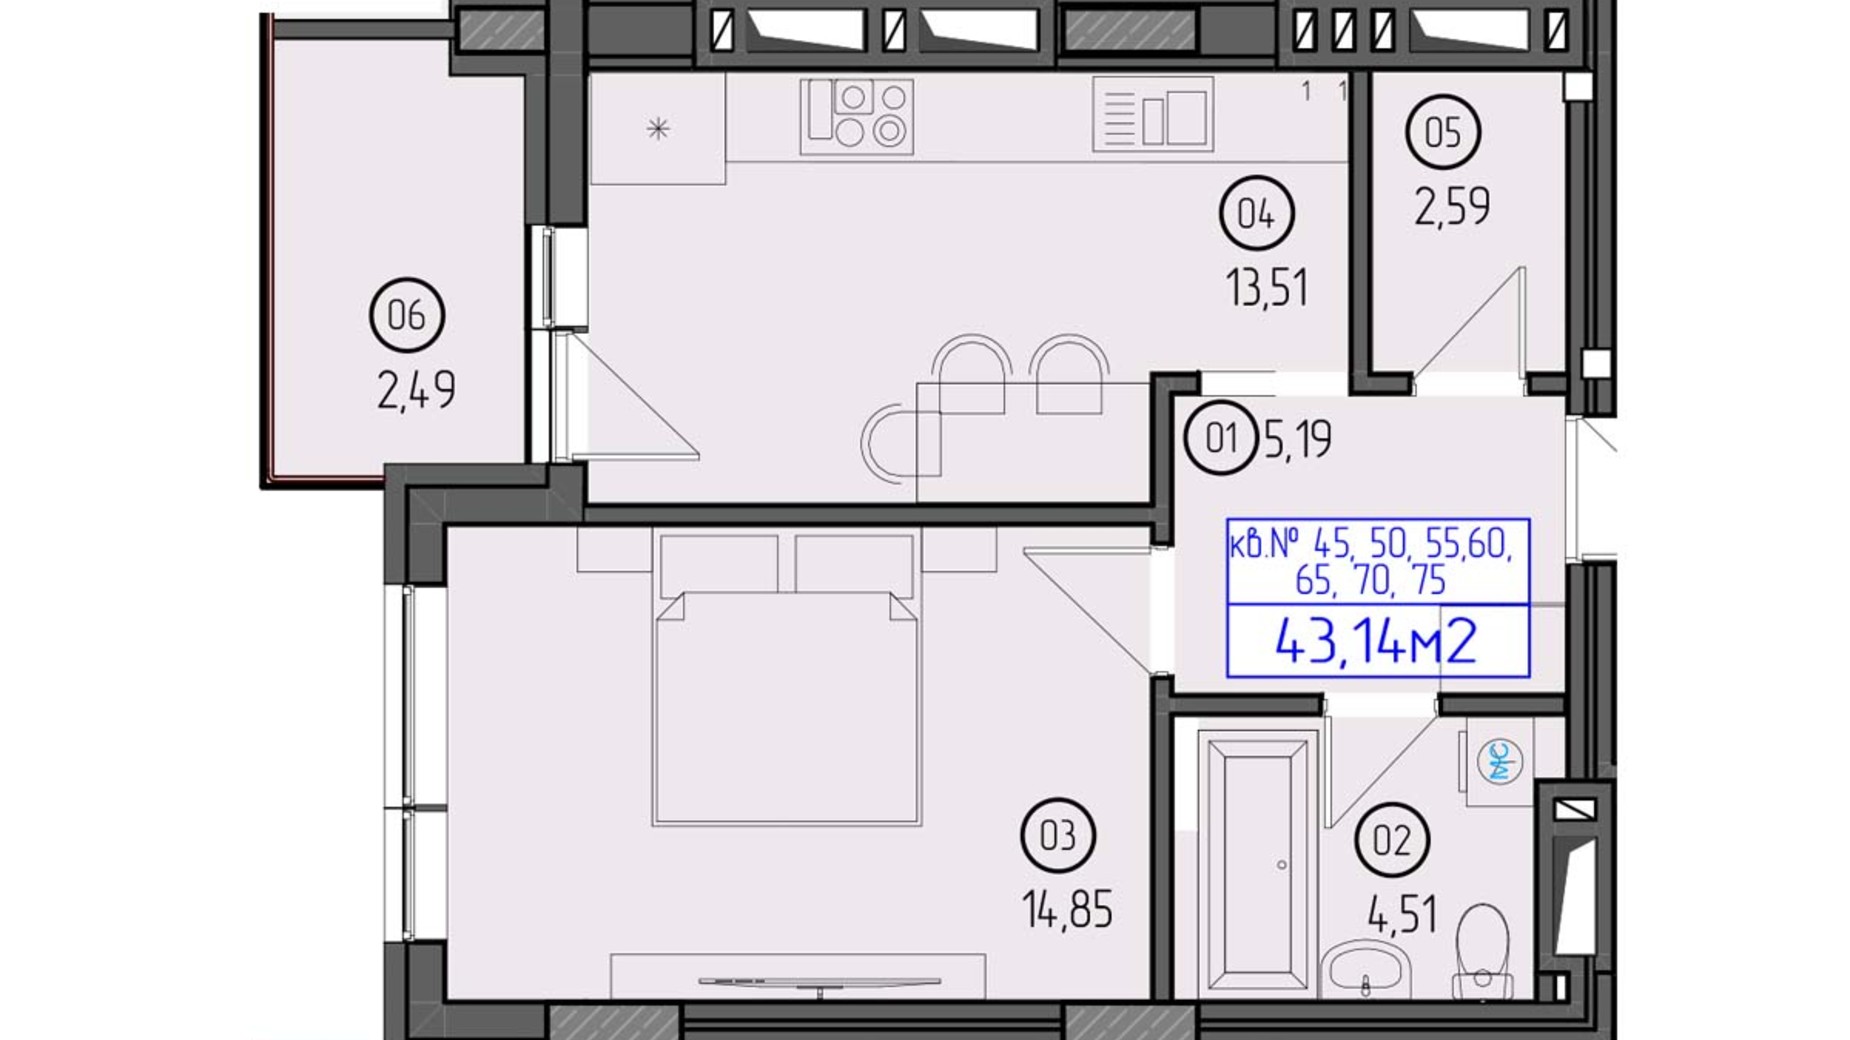 Планировка 1-комнатной квартиры в ЖК Будапешт 2 43.14 м², фото 558444